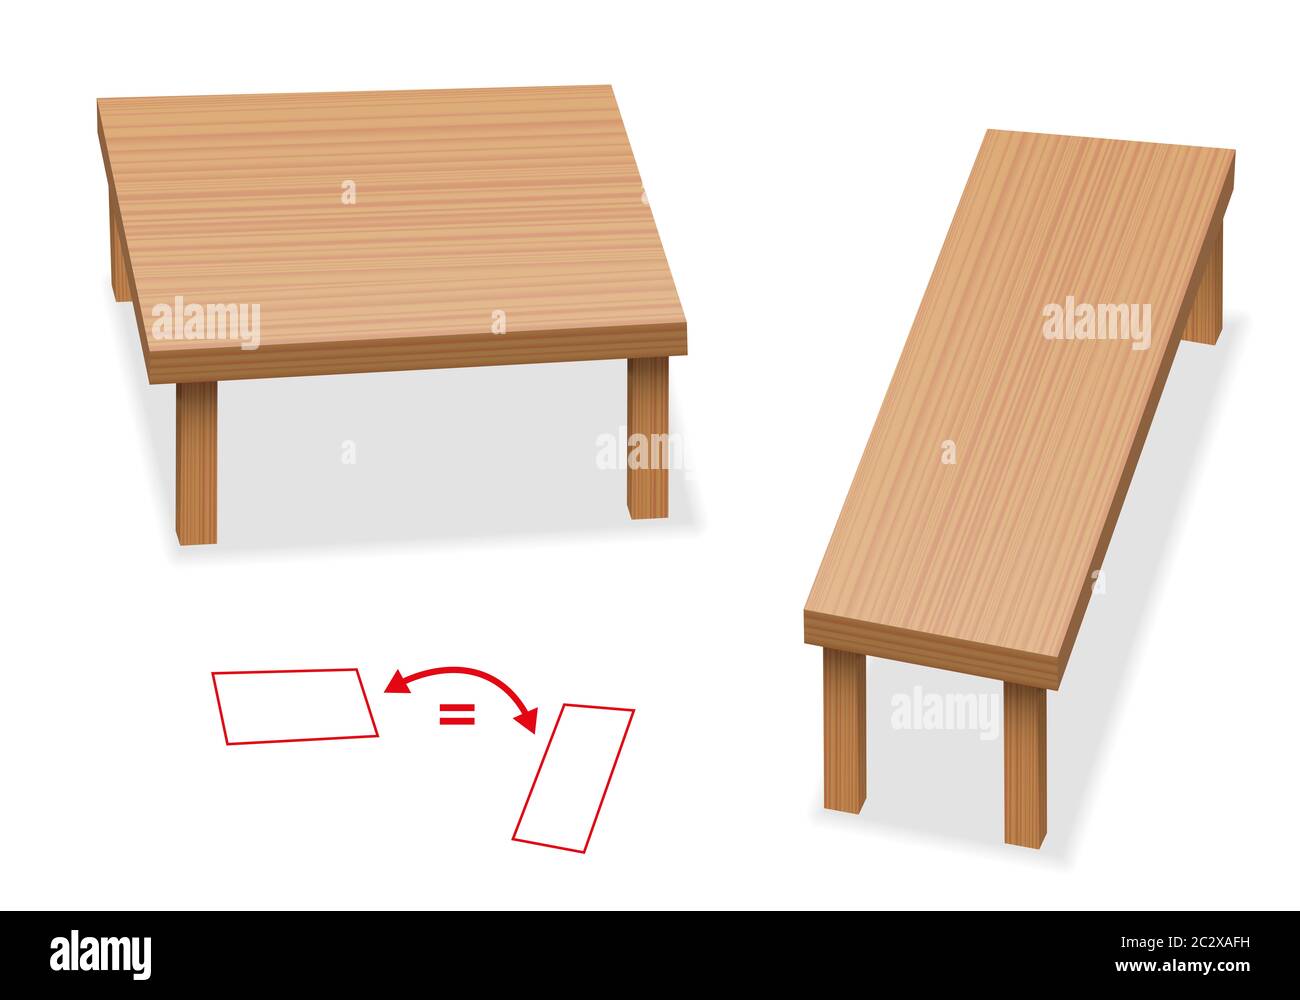 Optische Täuschung - zwei Tische mit genau der gleichen Größe der Tischplatte - relative Größe Wahrnehmung. Die beiden Holzflächen sind unterschiedlich. Stockfoto